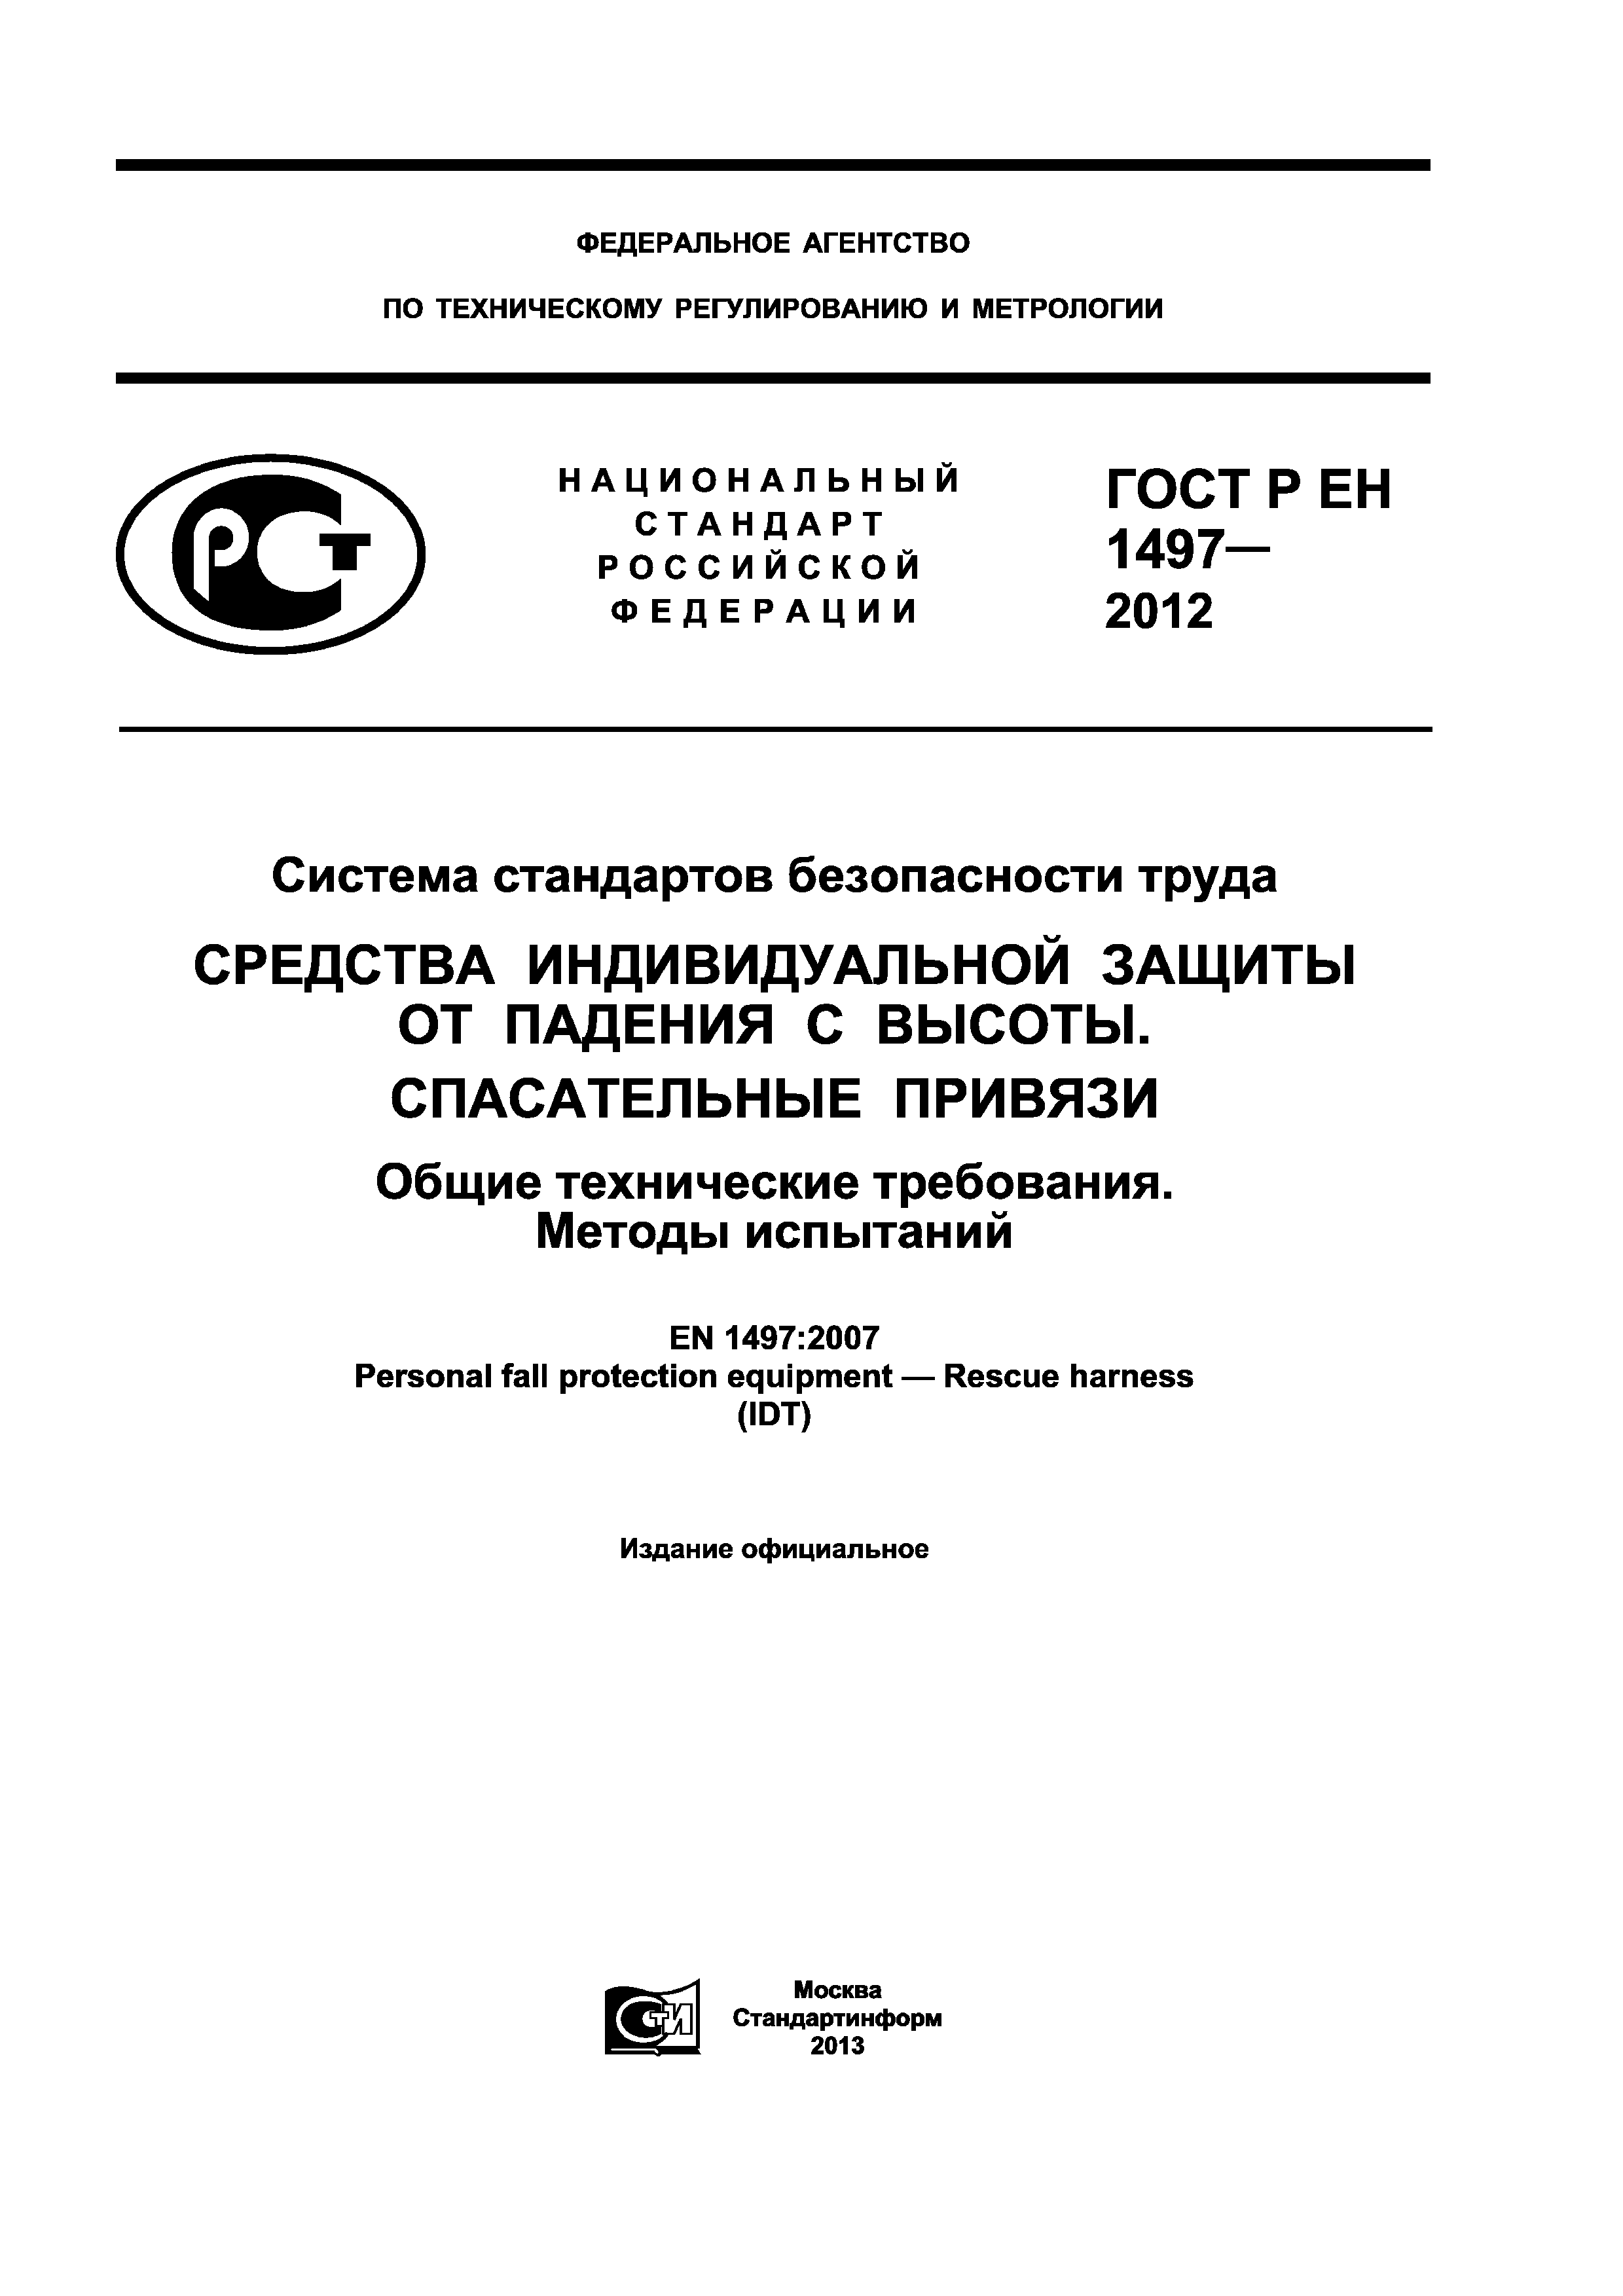 ГОСТ Р ЕН 1497-2012